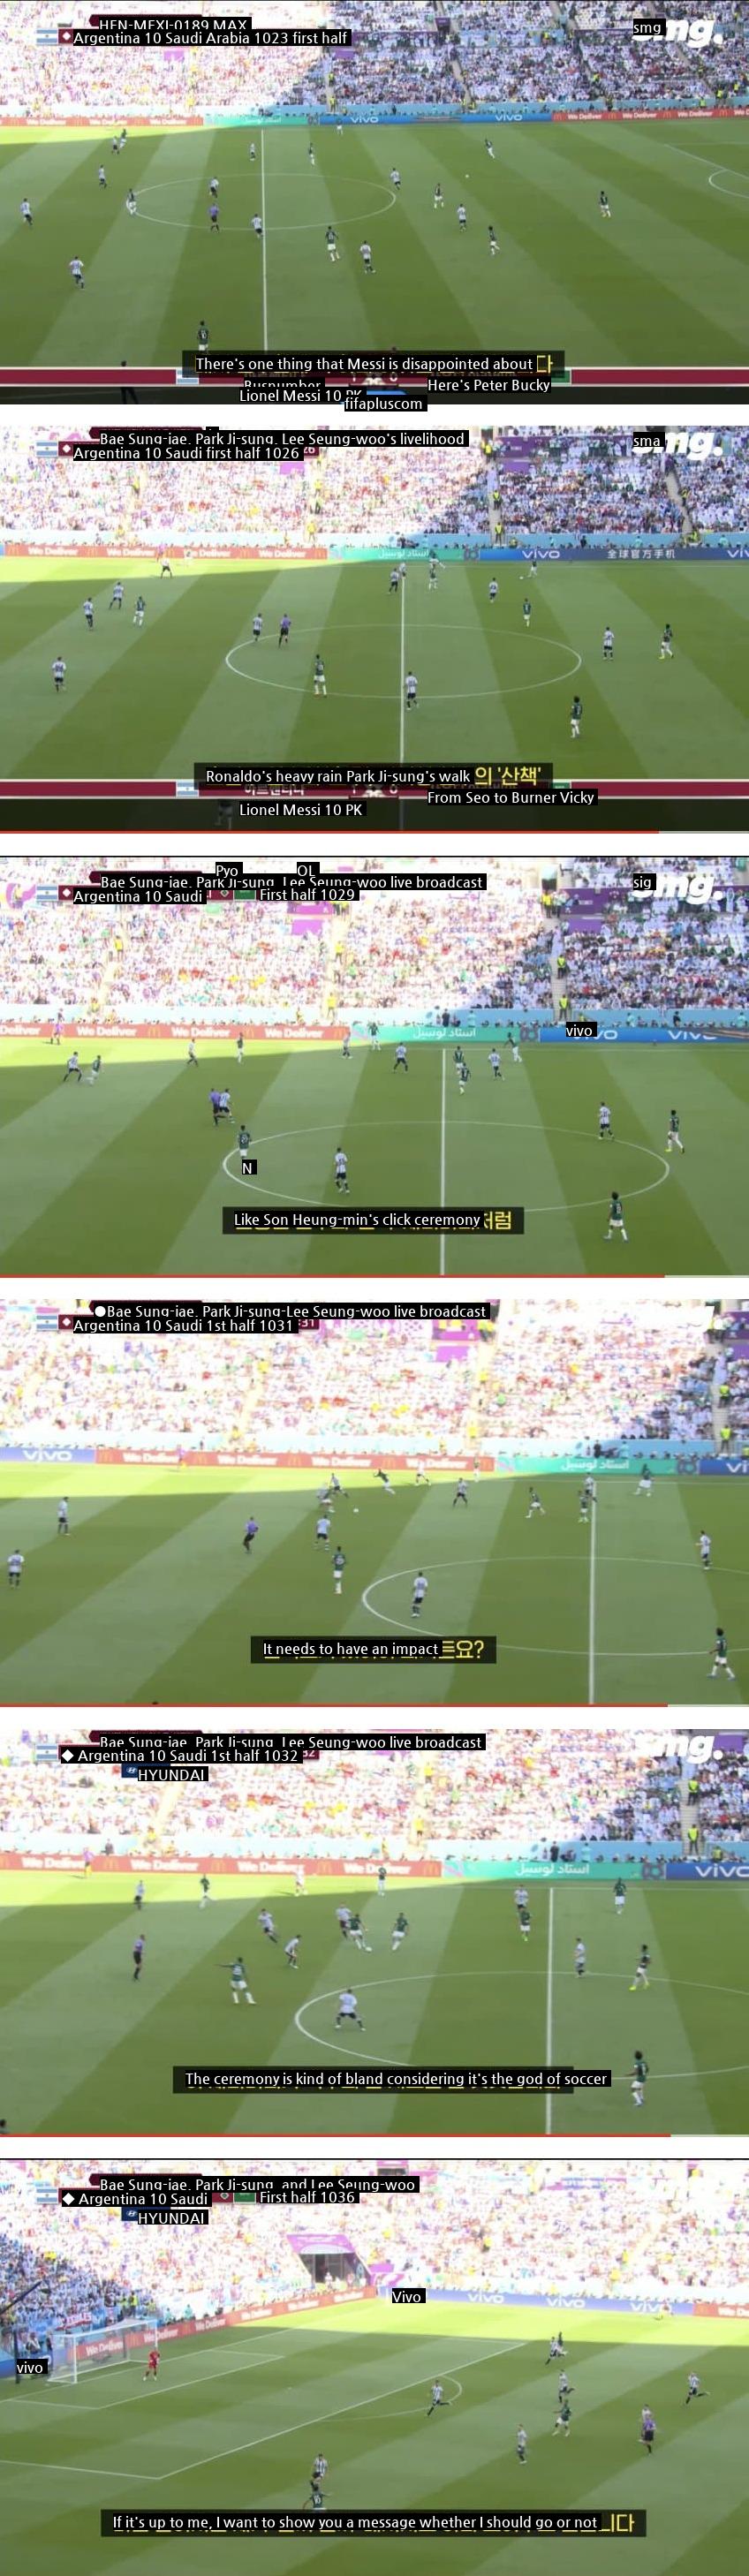 Lee Seung-woo attacks Messi